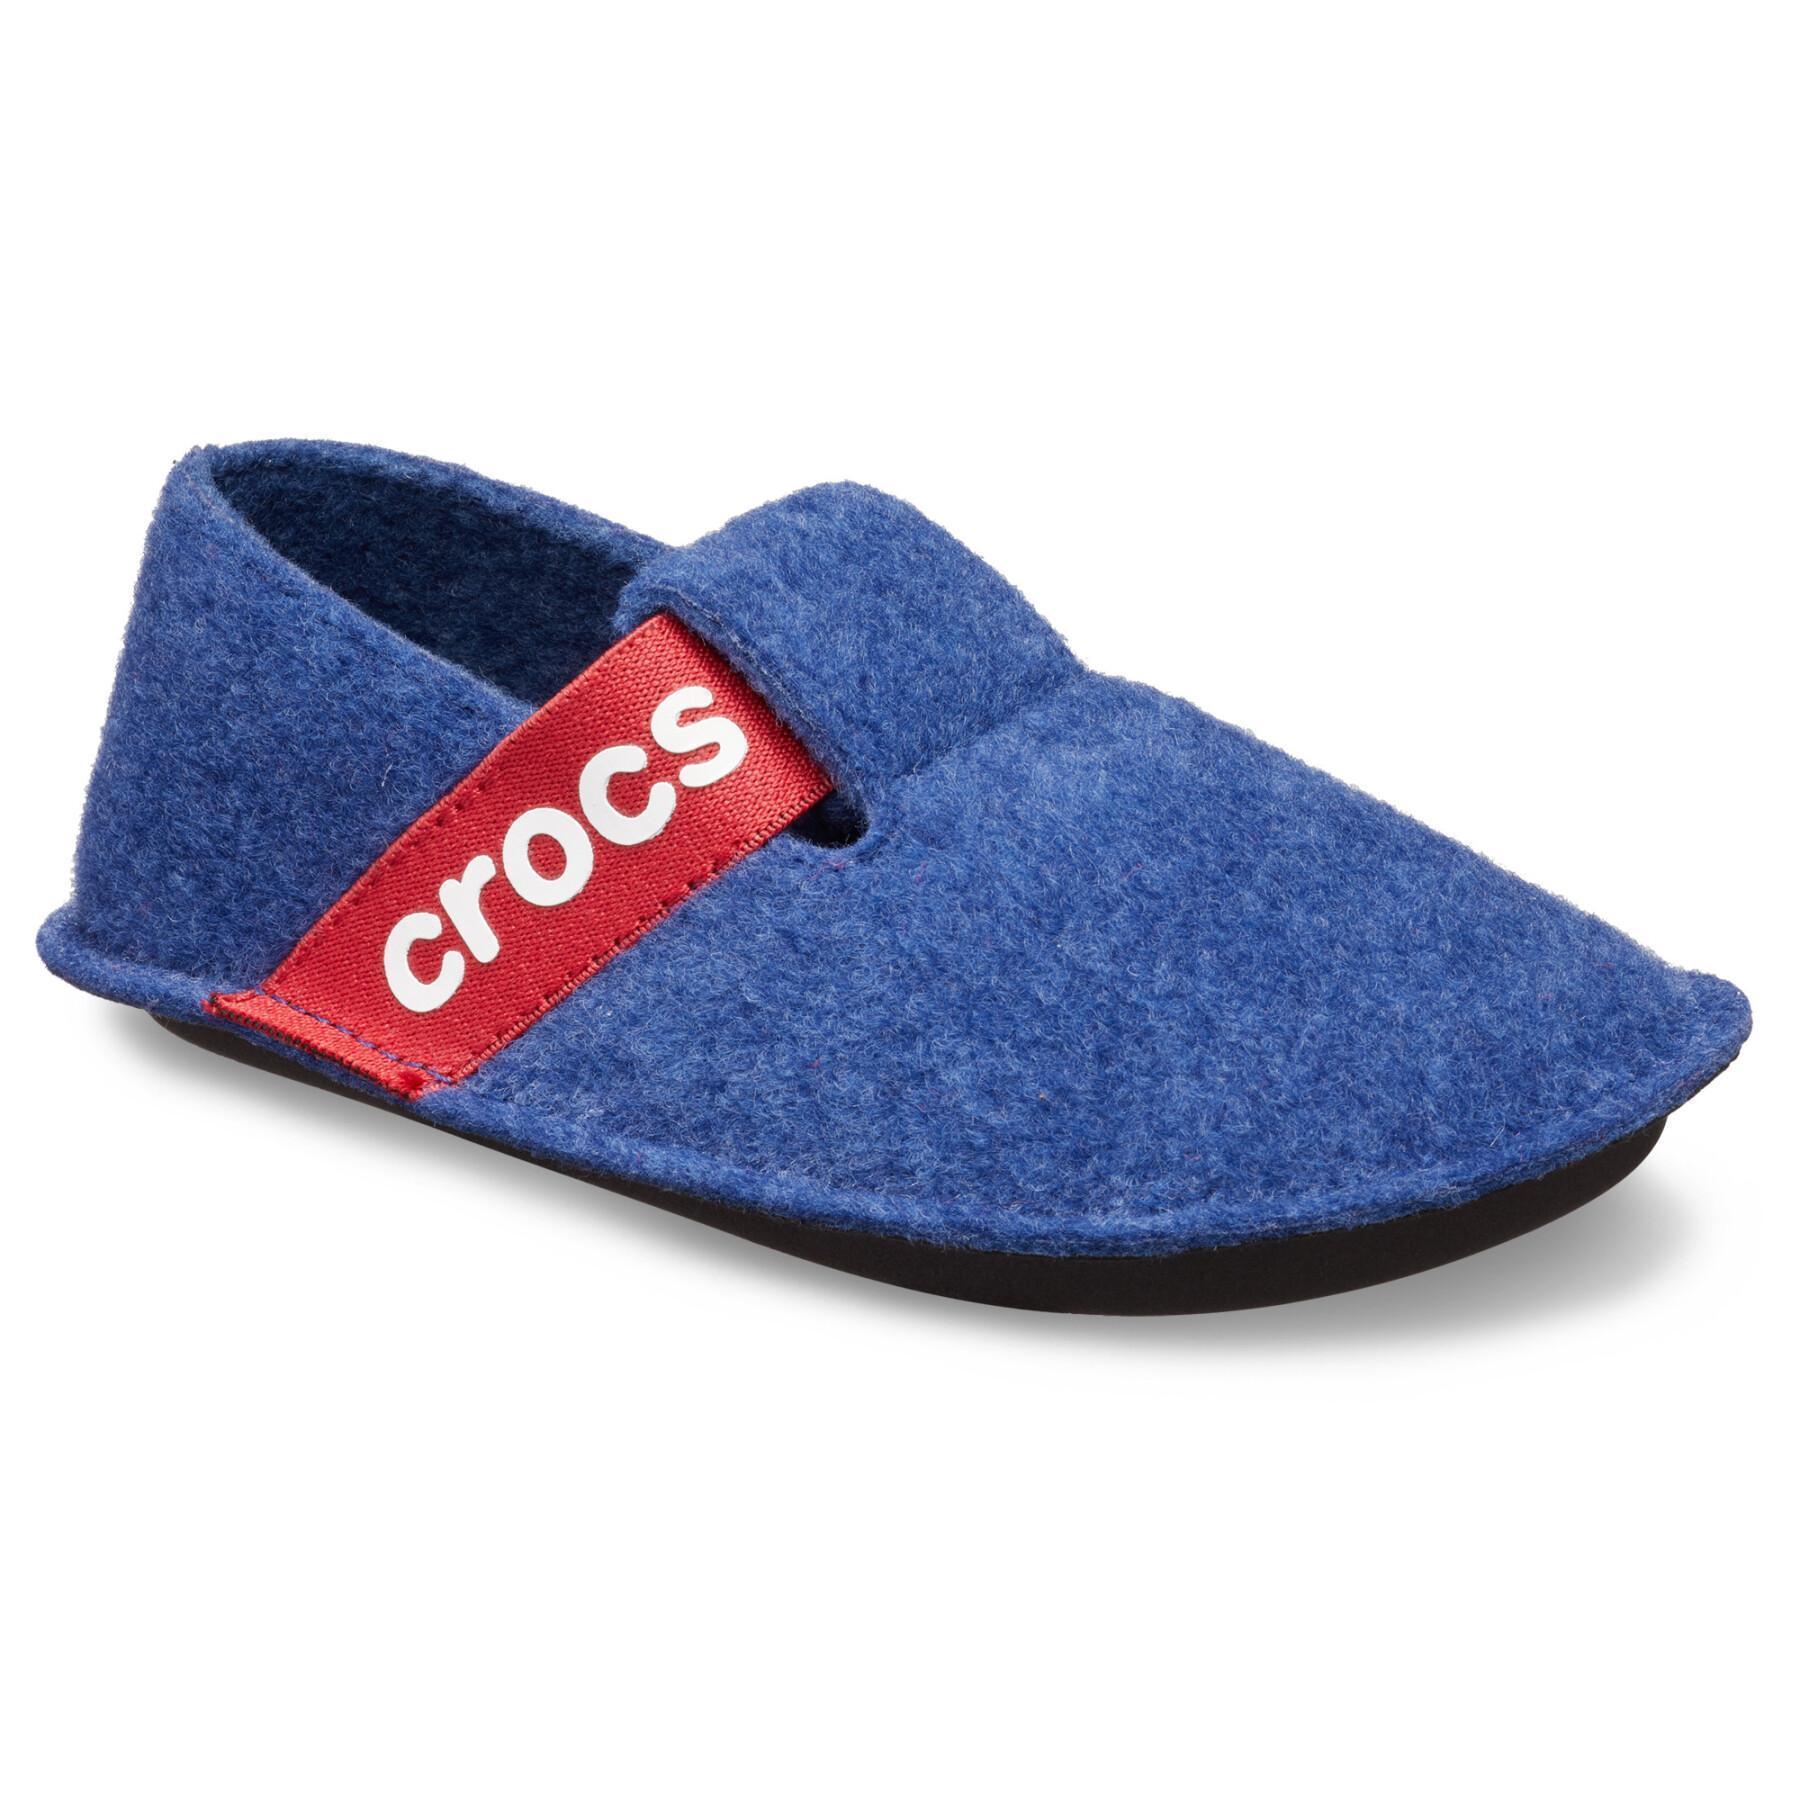 Zapatillas para niños Crocs classic slipper